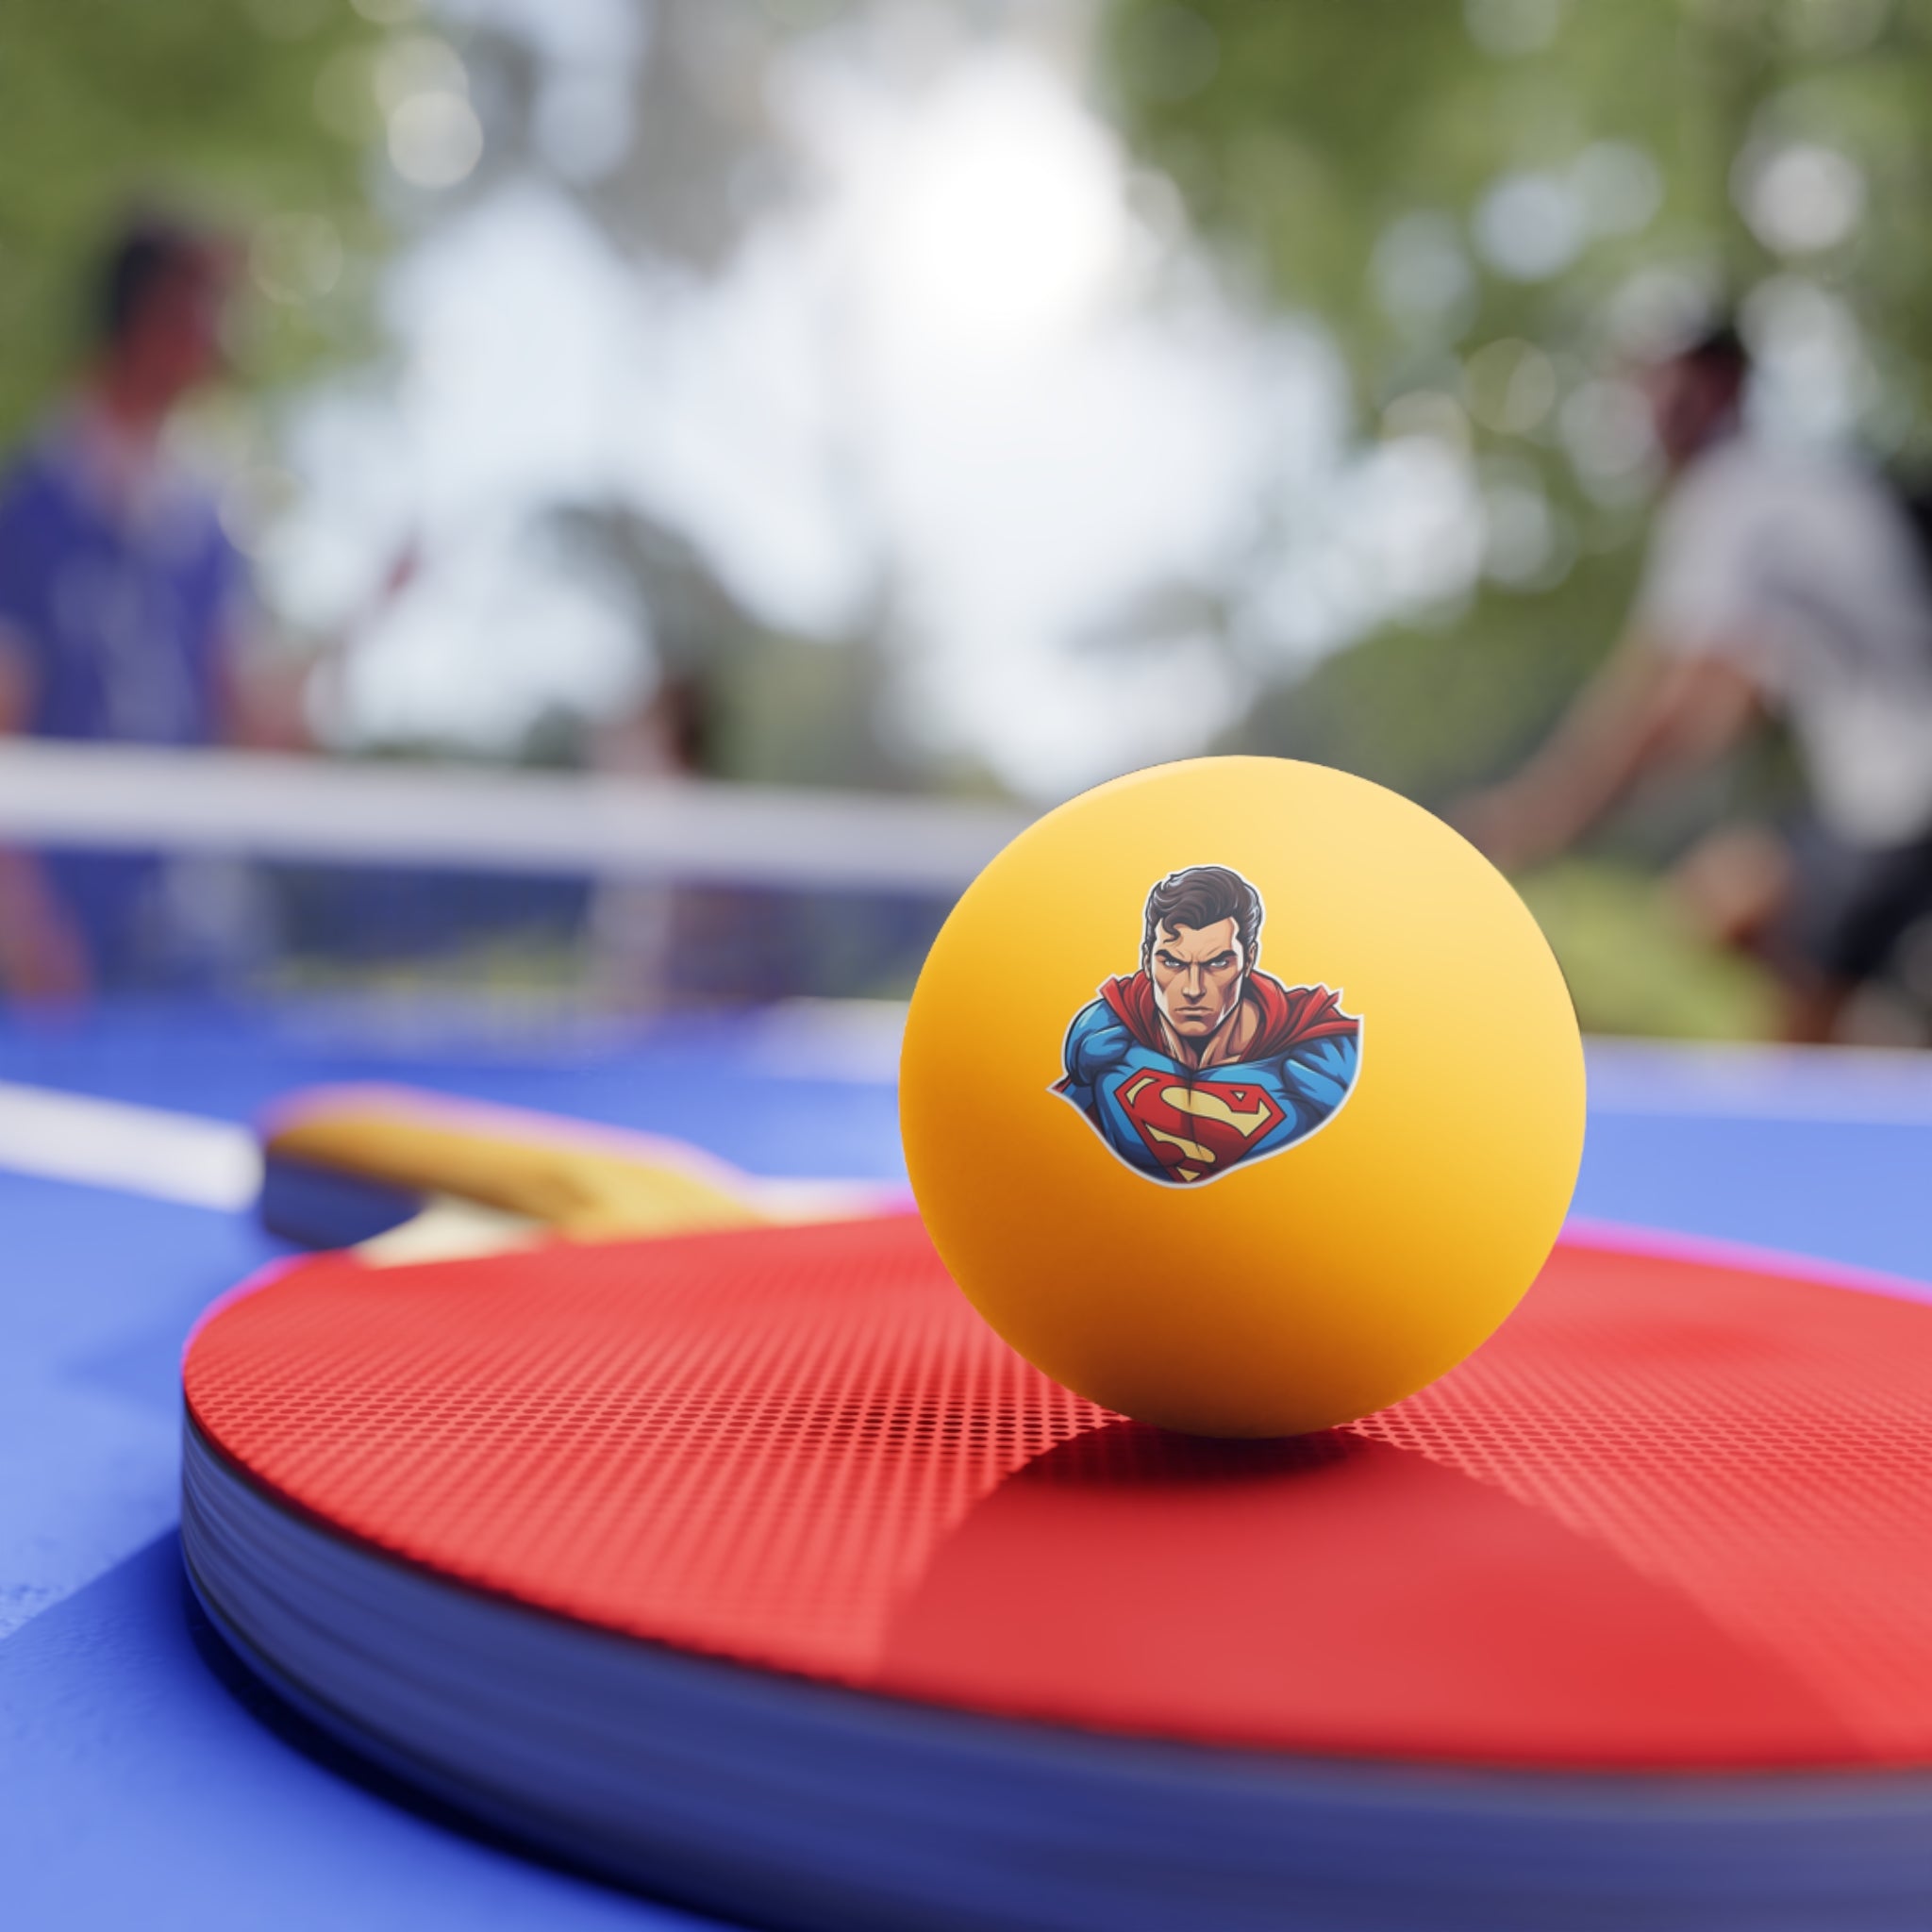 Ping Pong Balls, 6 pcs - Pop Art - Superman